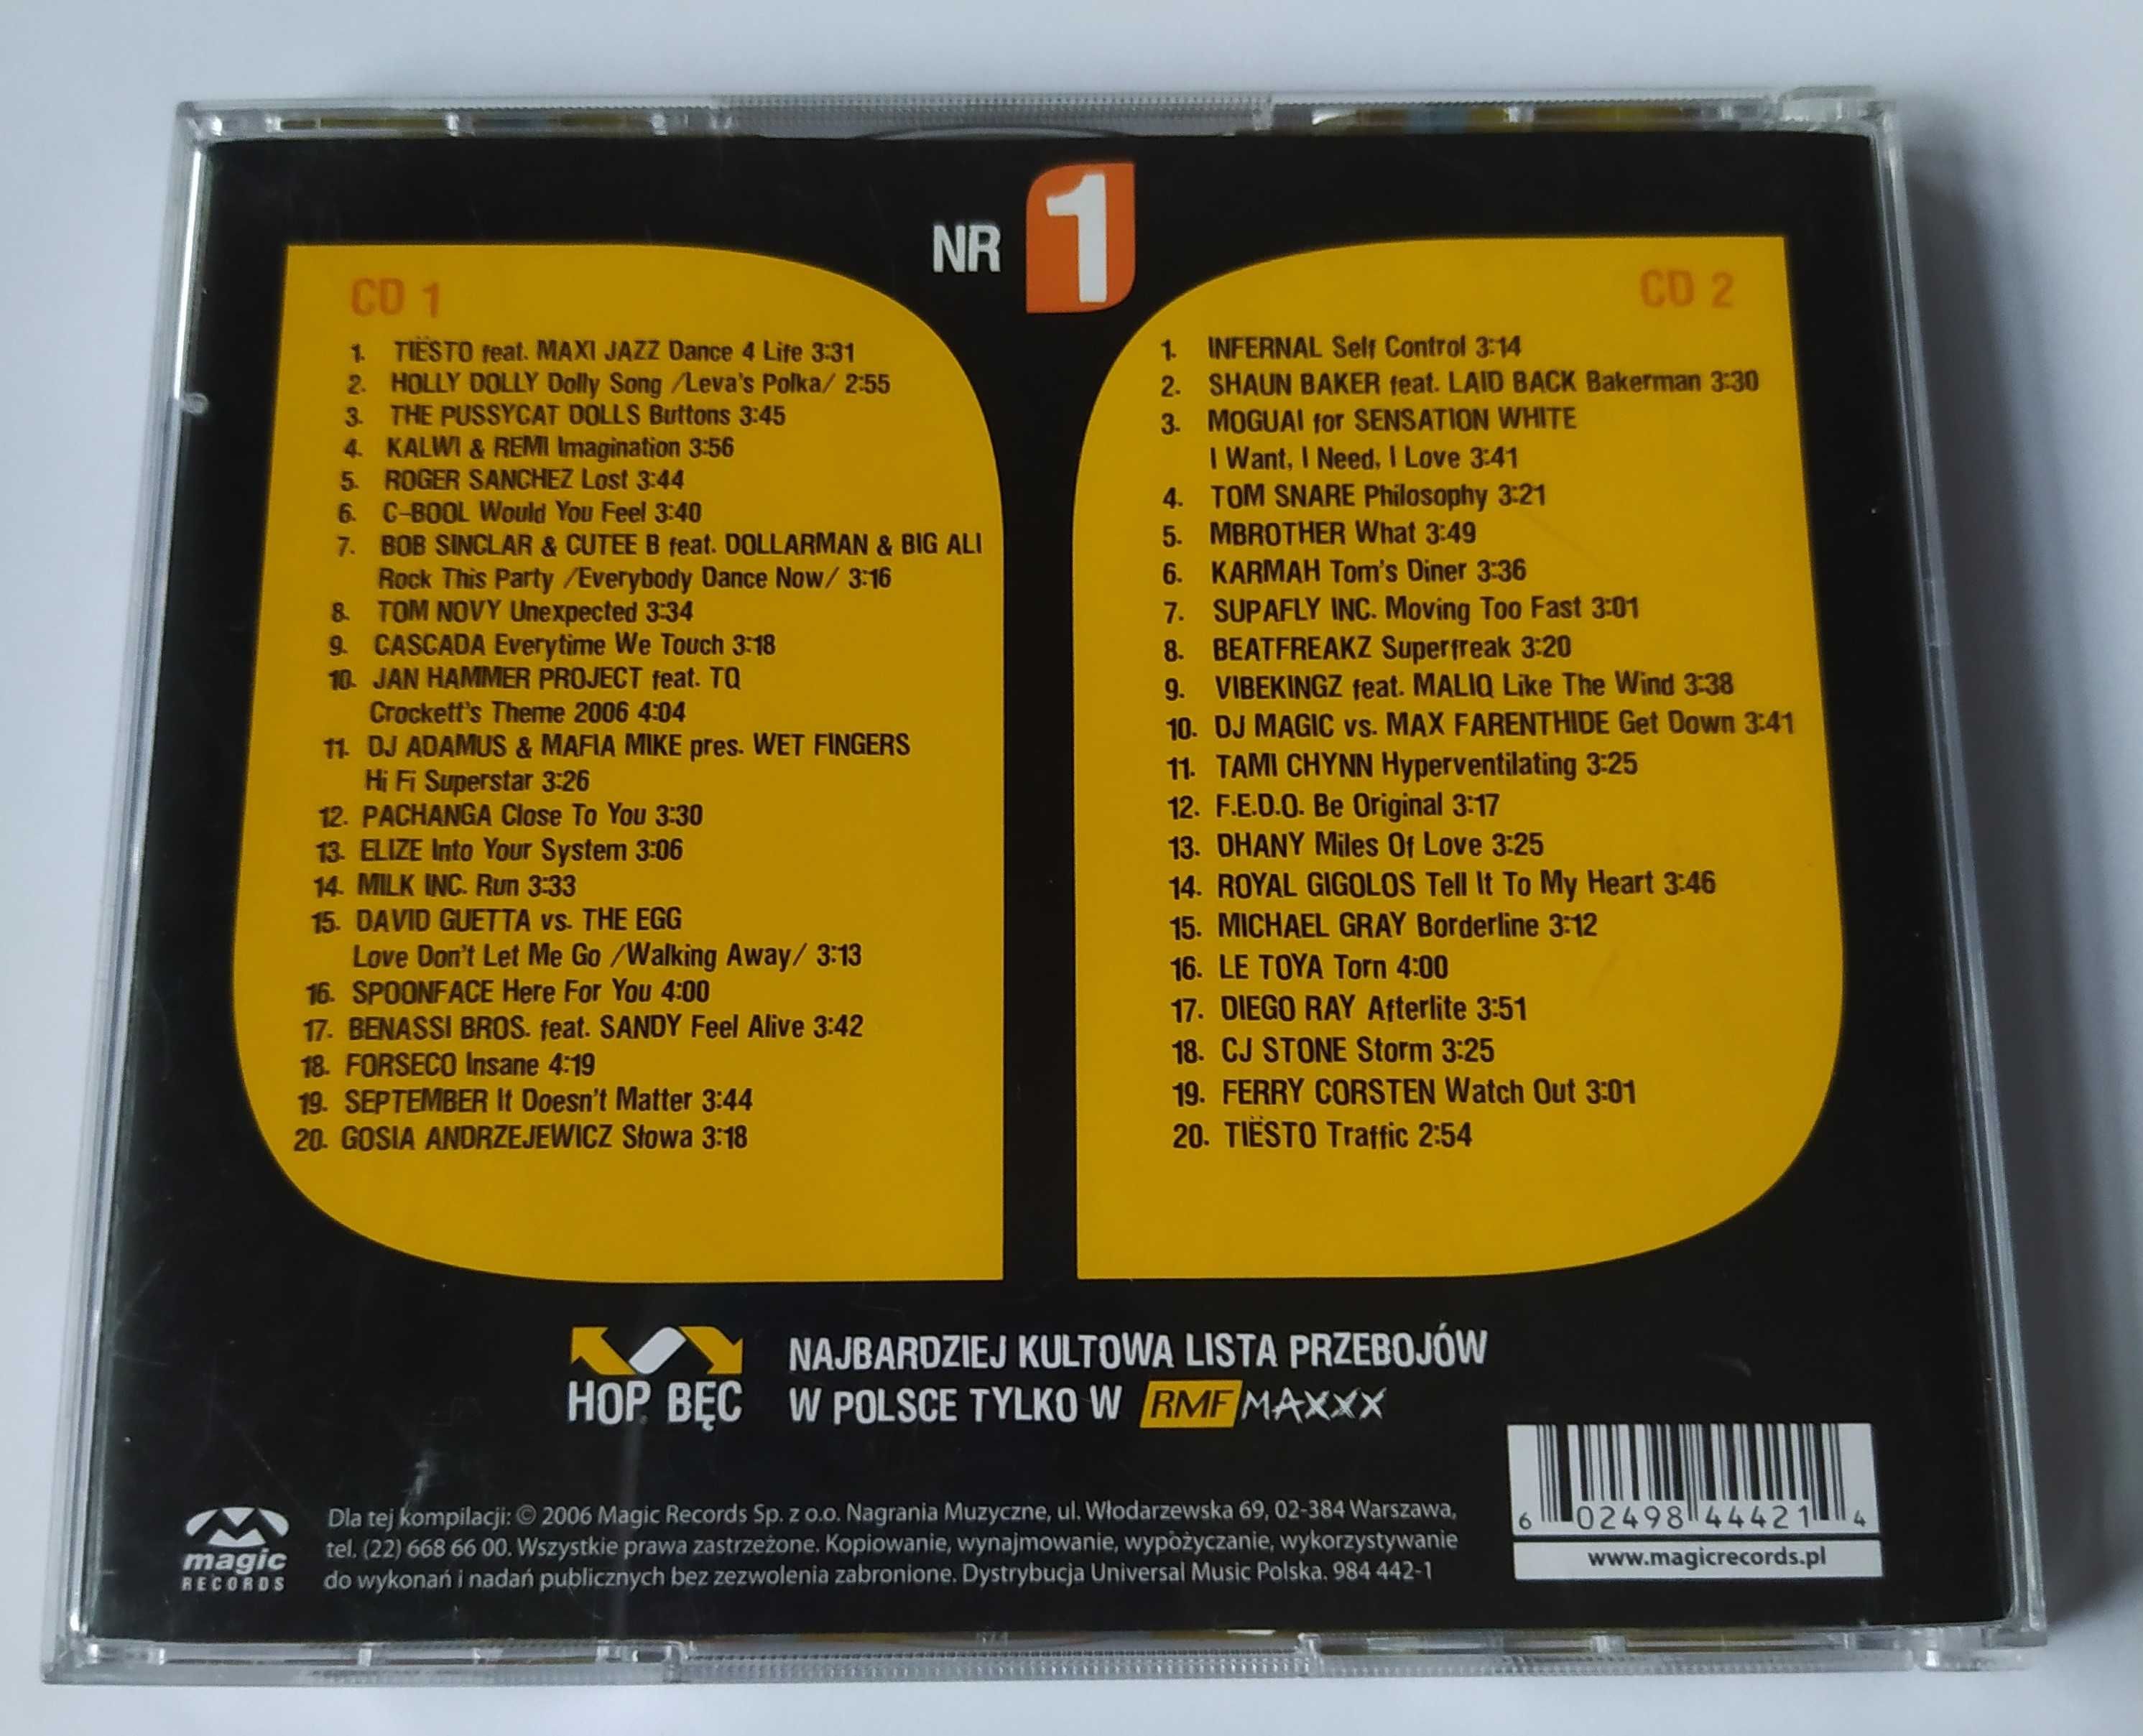 Hop Bęc Nr 1 - 2 CD